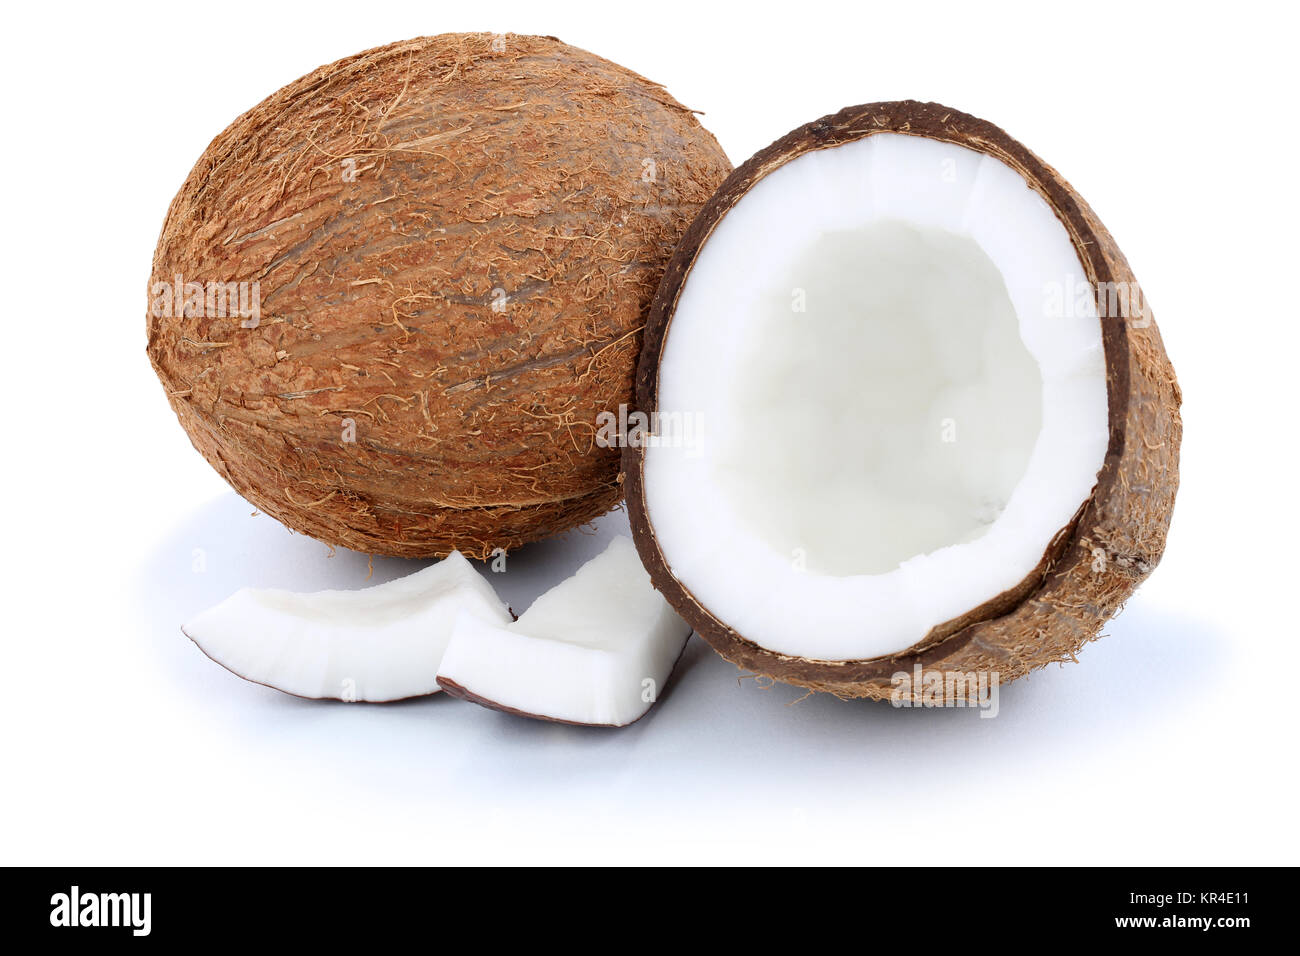 Kokosnuss Kokosnüsse Frucht frische Früchte Freisteller freigestellt isoliert vor einem weissen Hintergrund Stock Photo